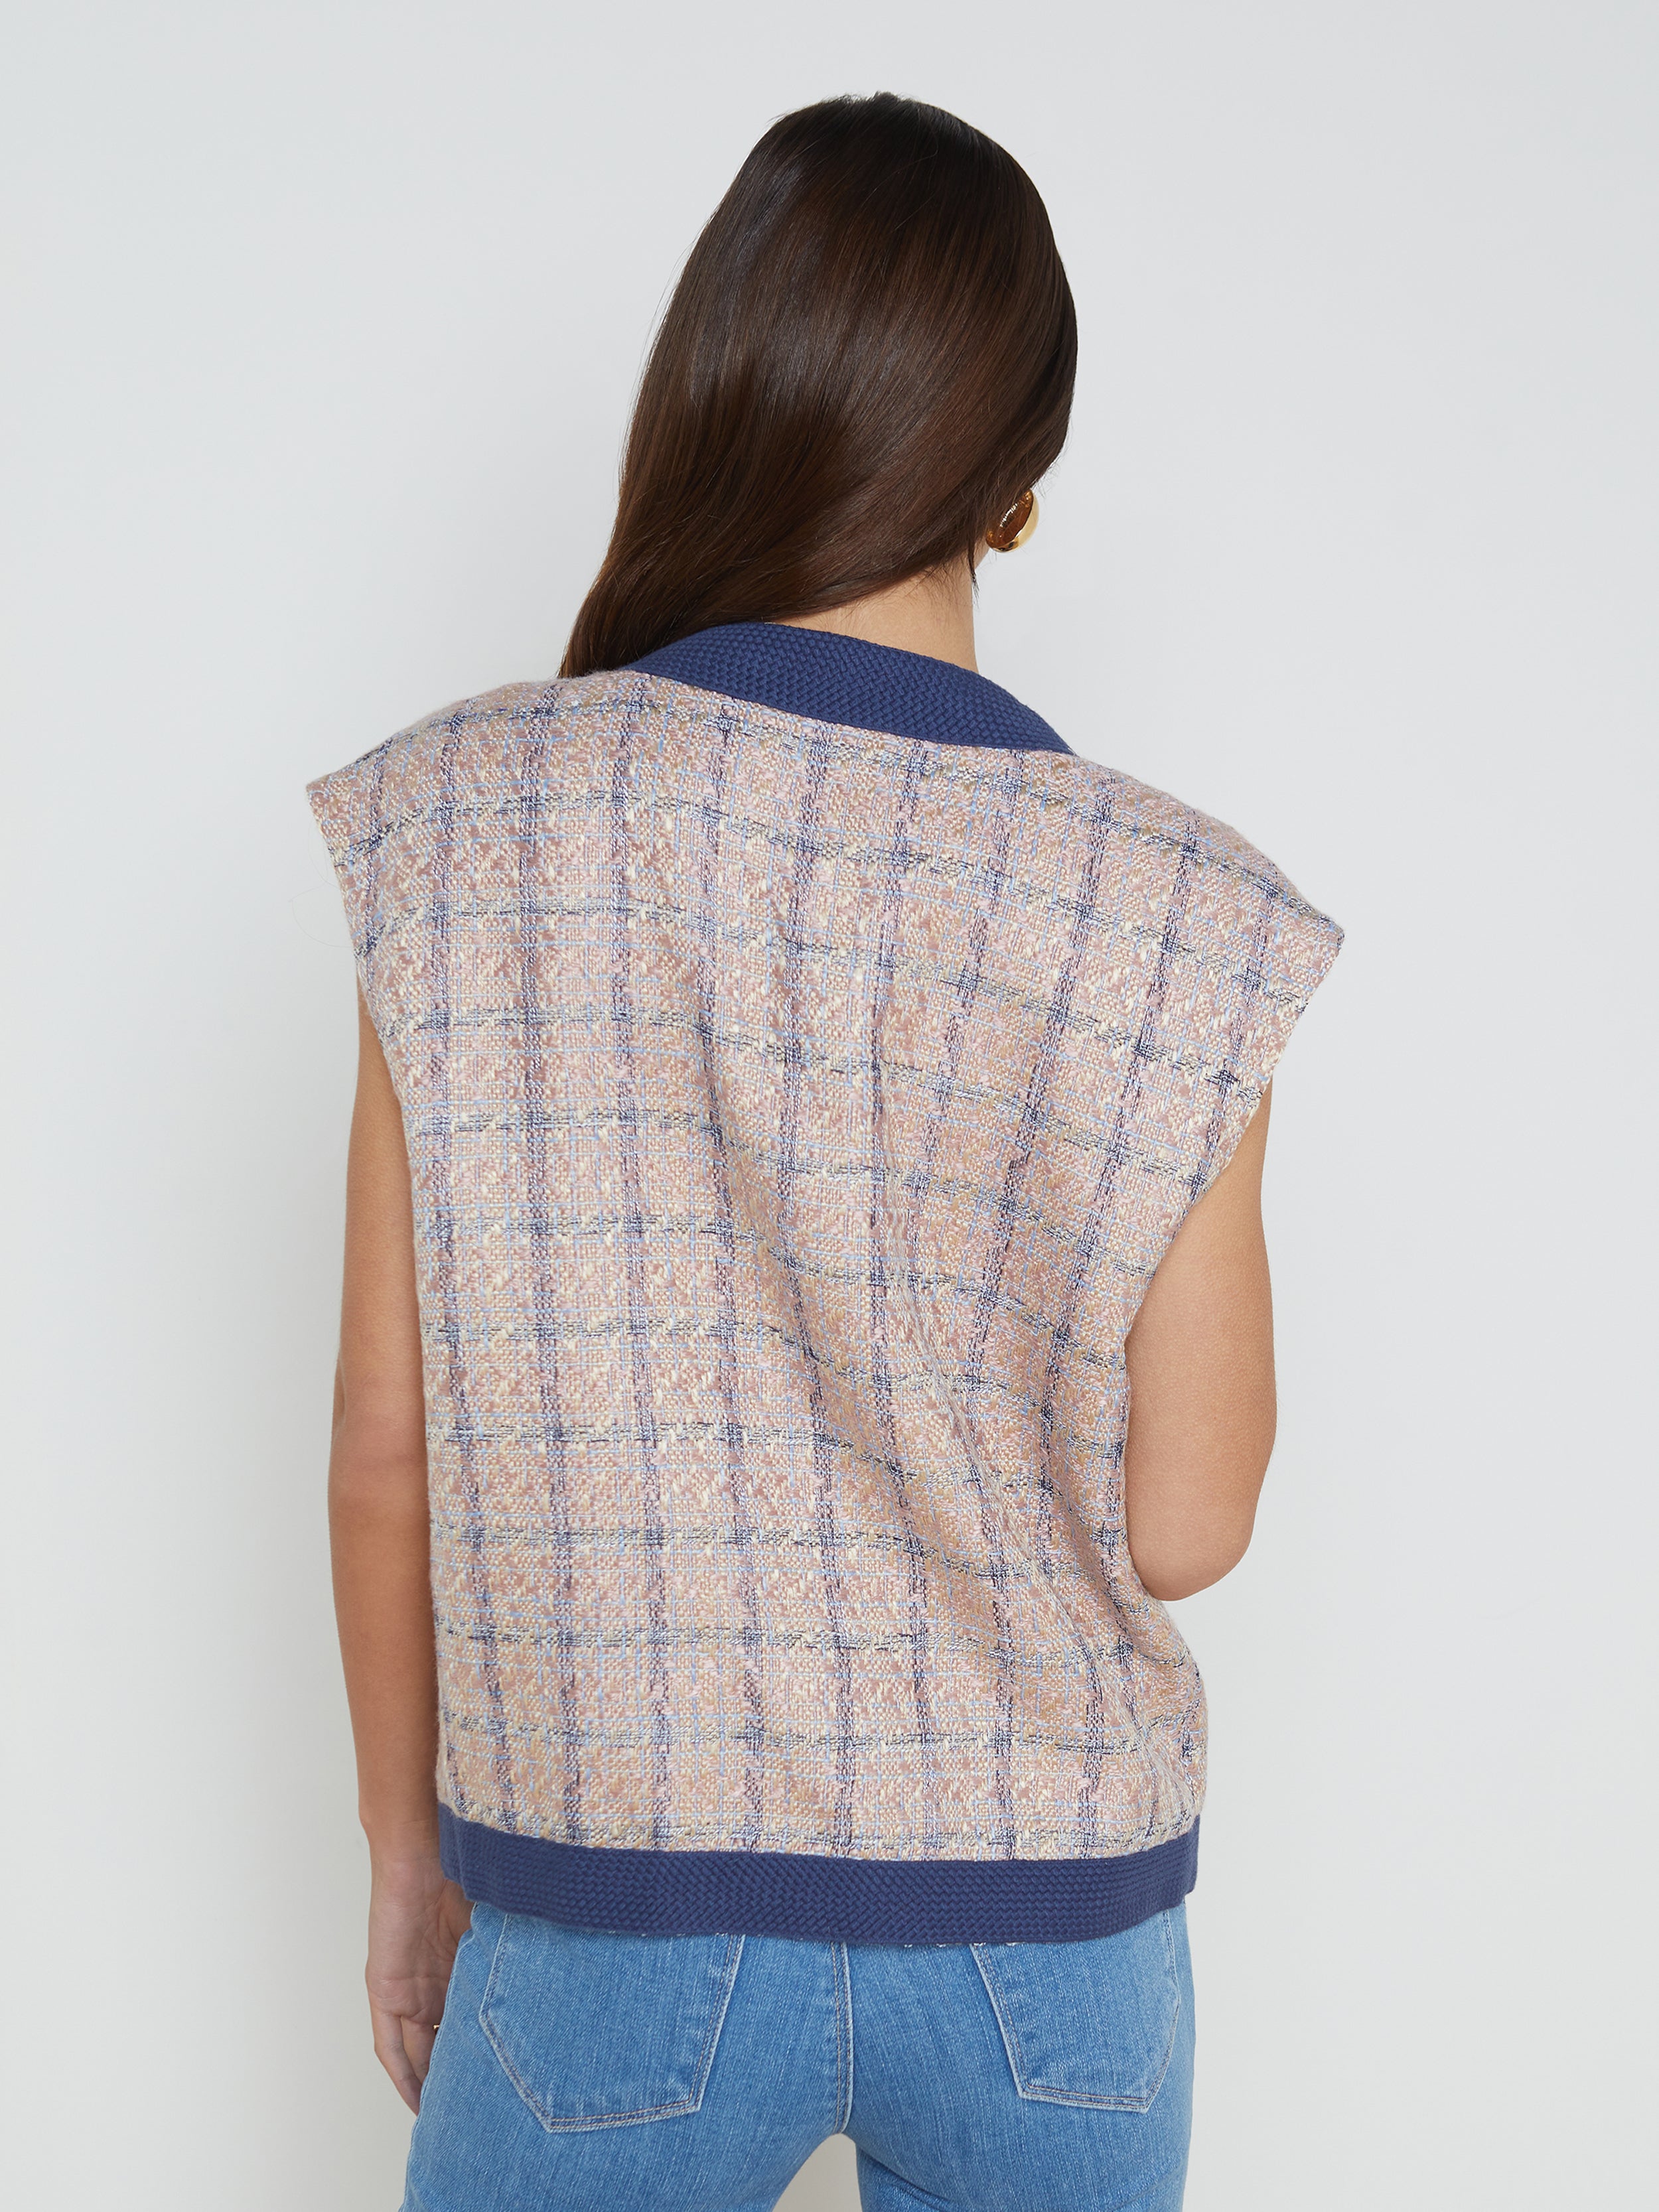 L'AGENCE - Lauren Tweed Oversized Vest in Tan/Dusty Pink/ Blue